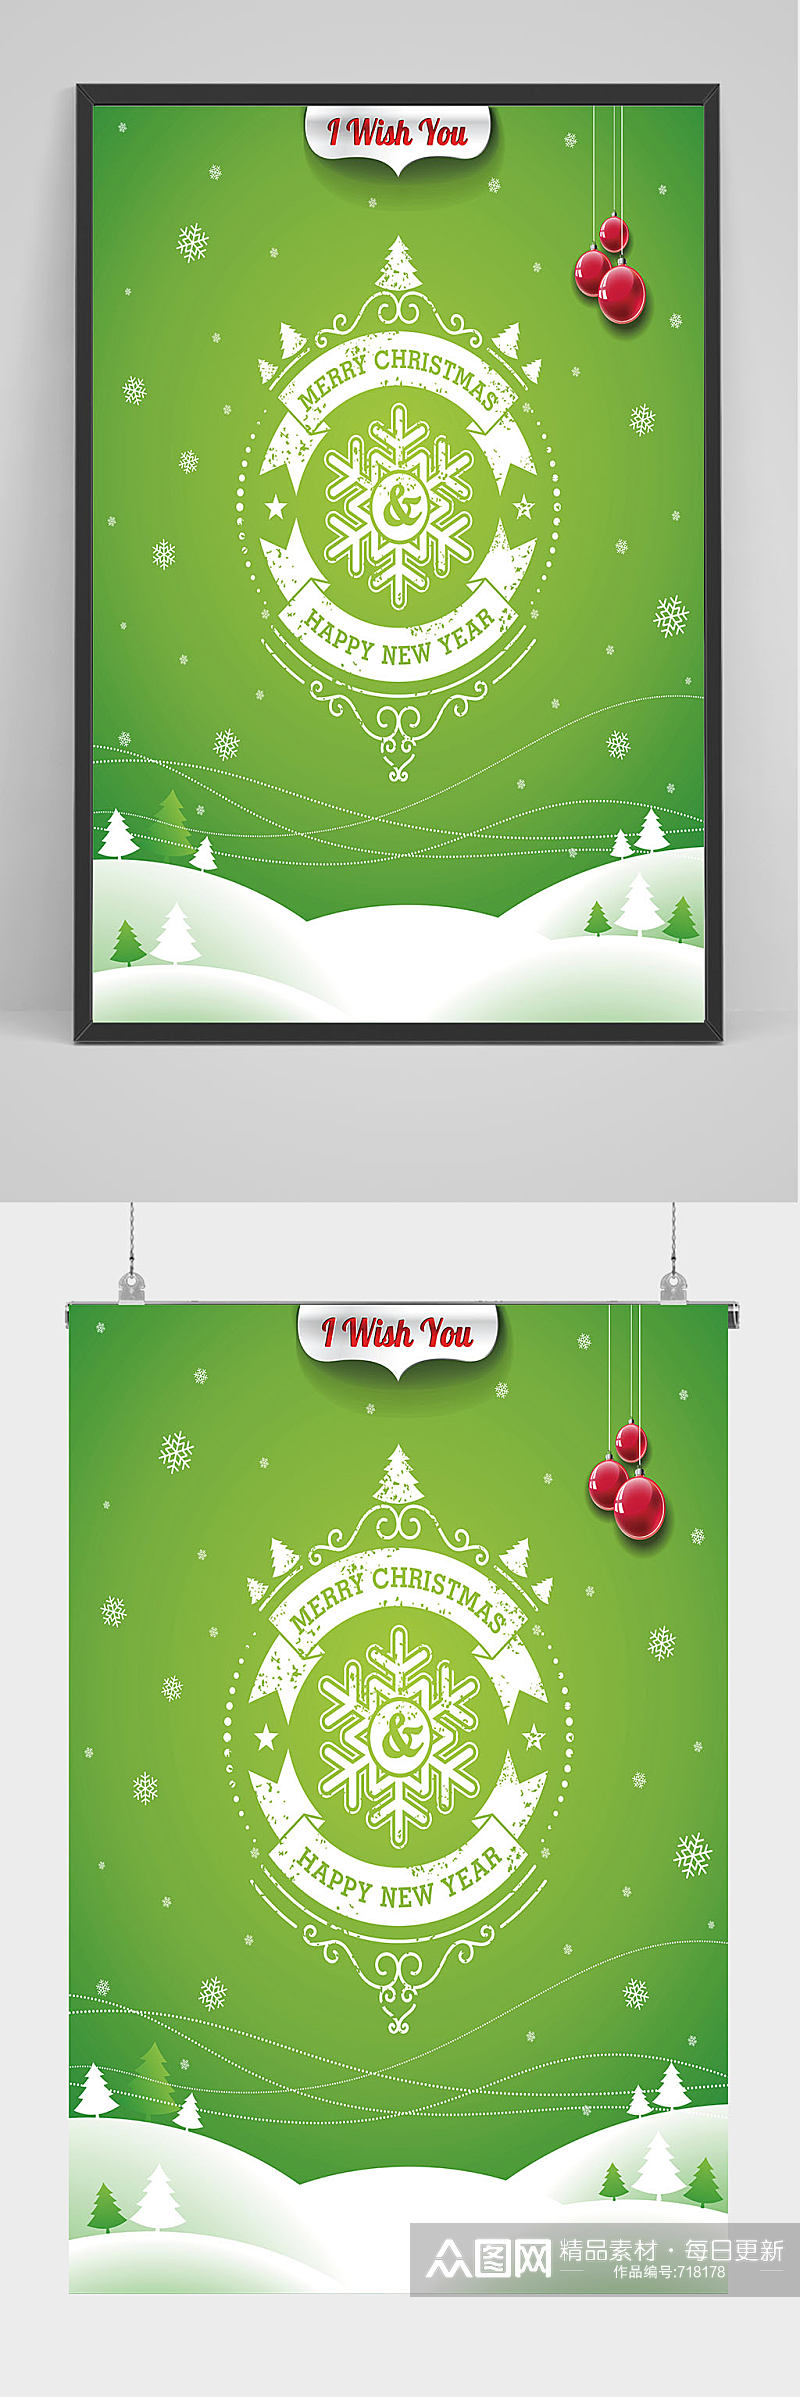 绿色圣诞节海报设计素材